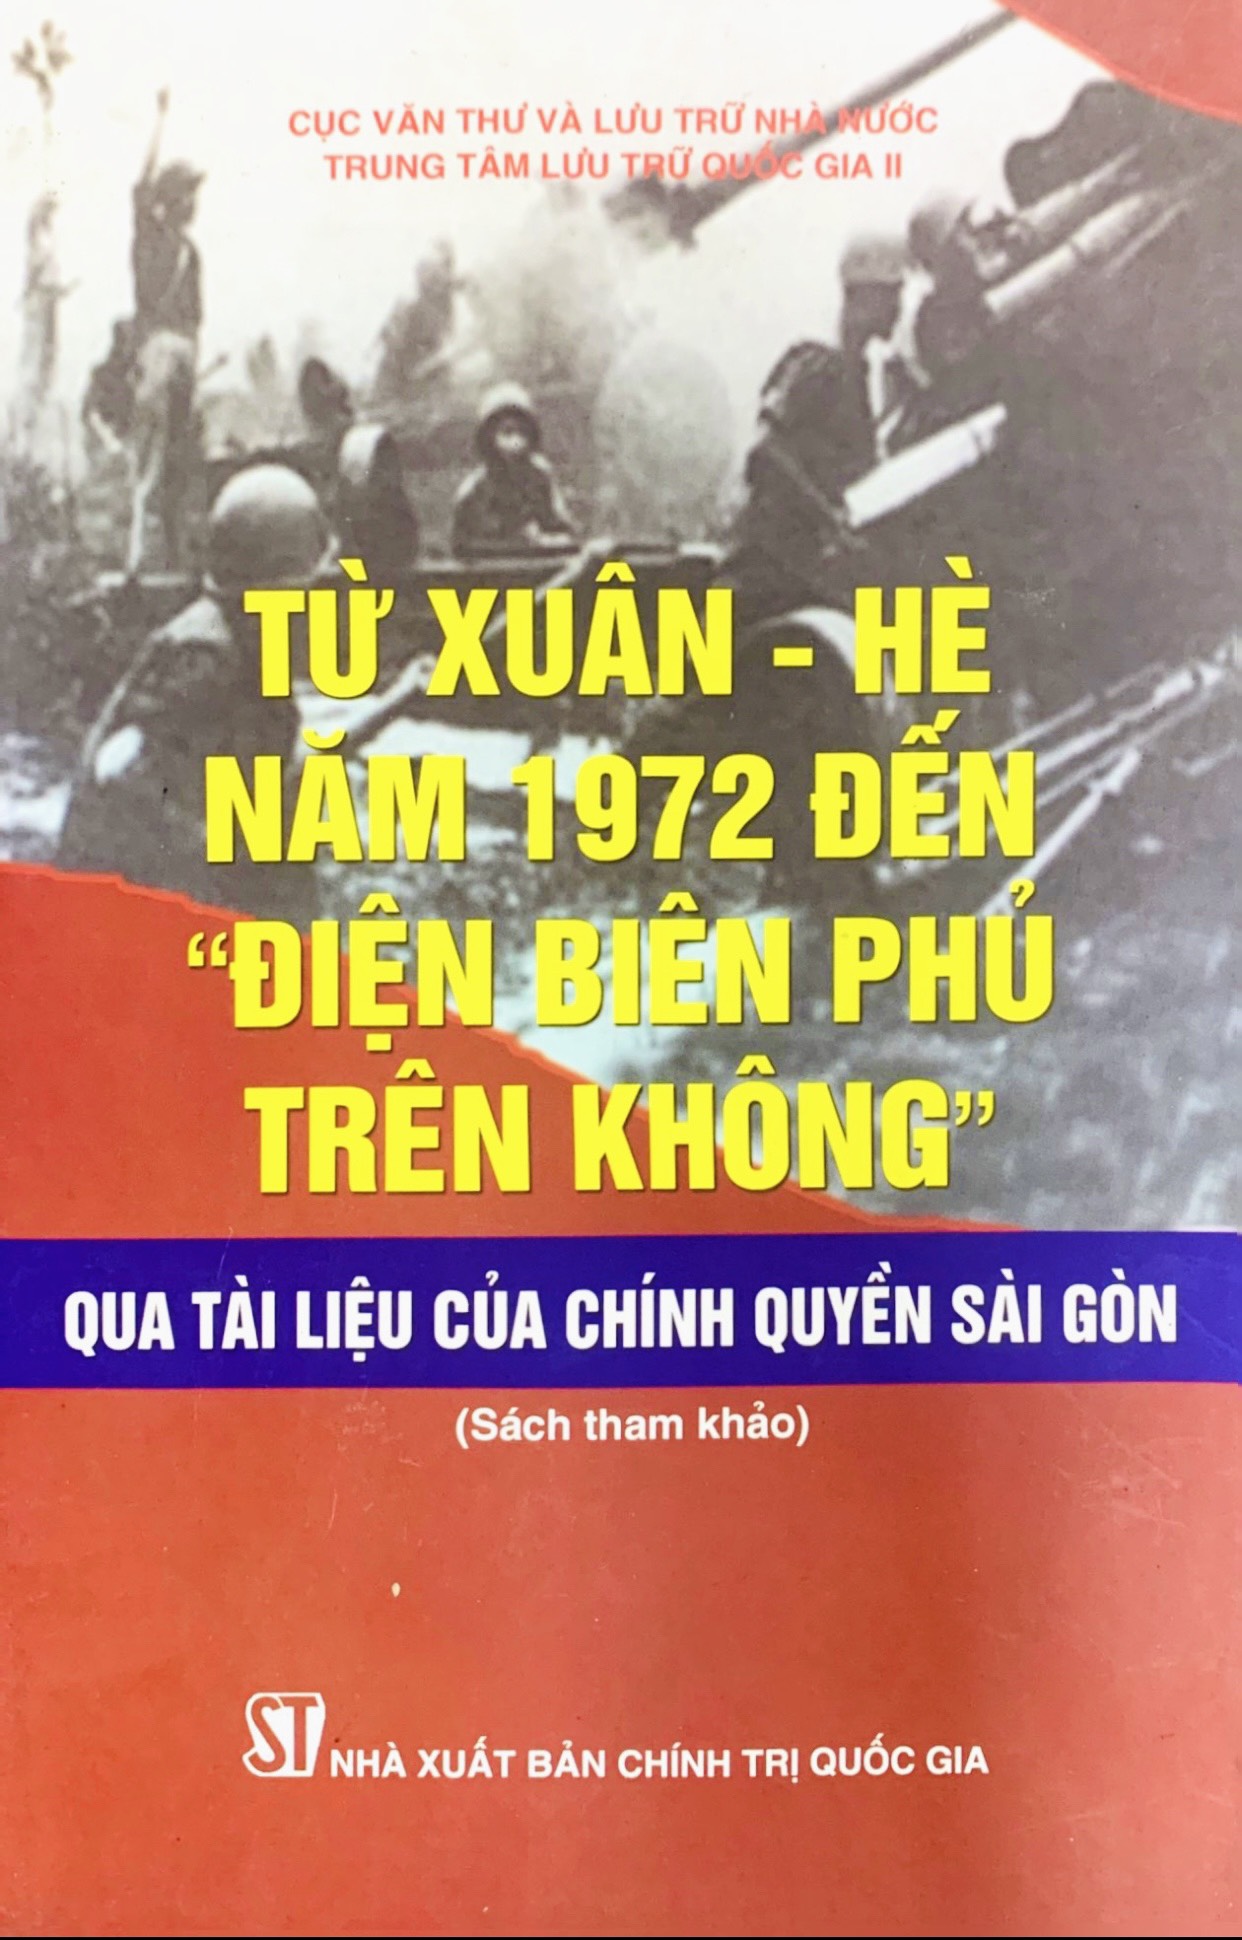 Từ Xuân - Hè năm 1972 đến &quot;Điện Biên Phủ trên không&quot; qua tài liệu của chính quyền Sài Gòn (xuất bản 2013)